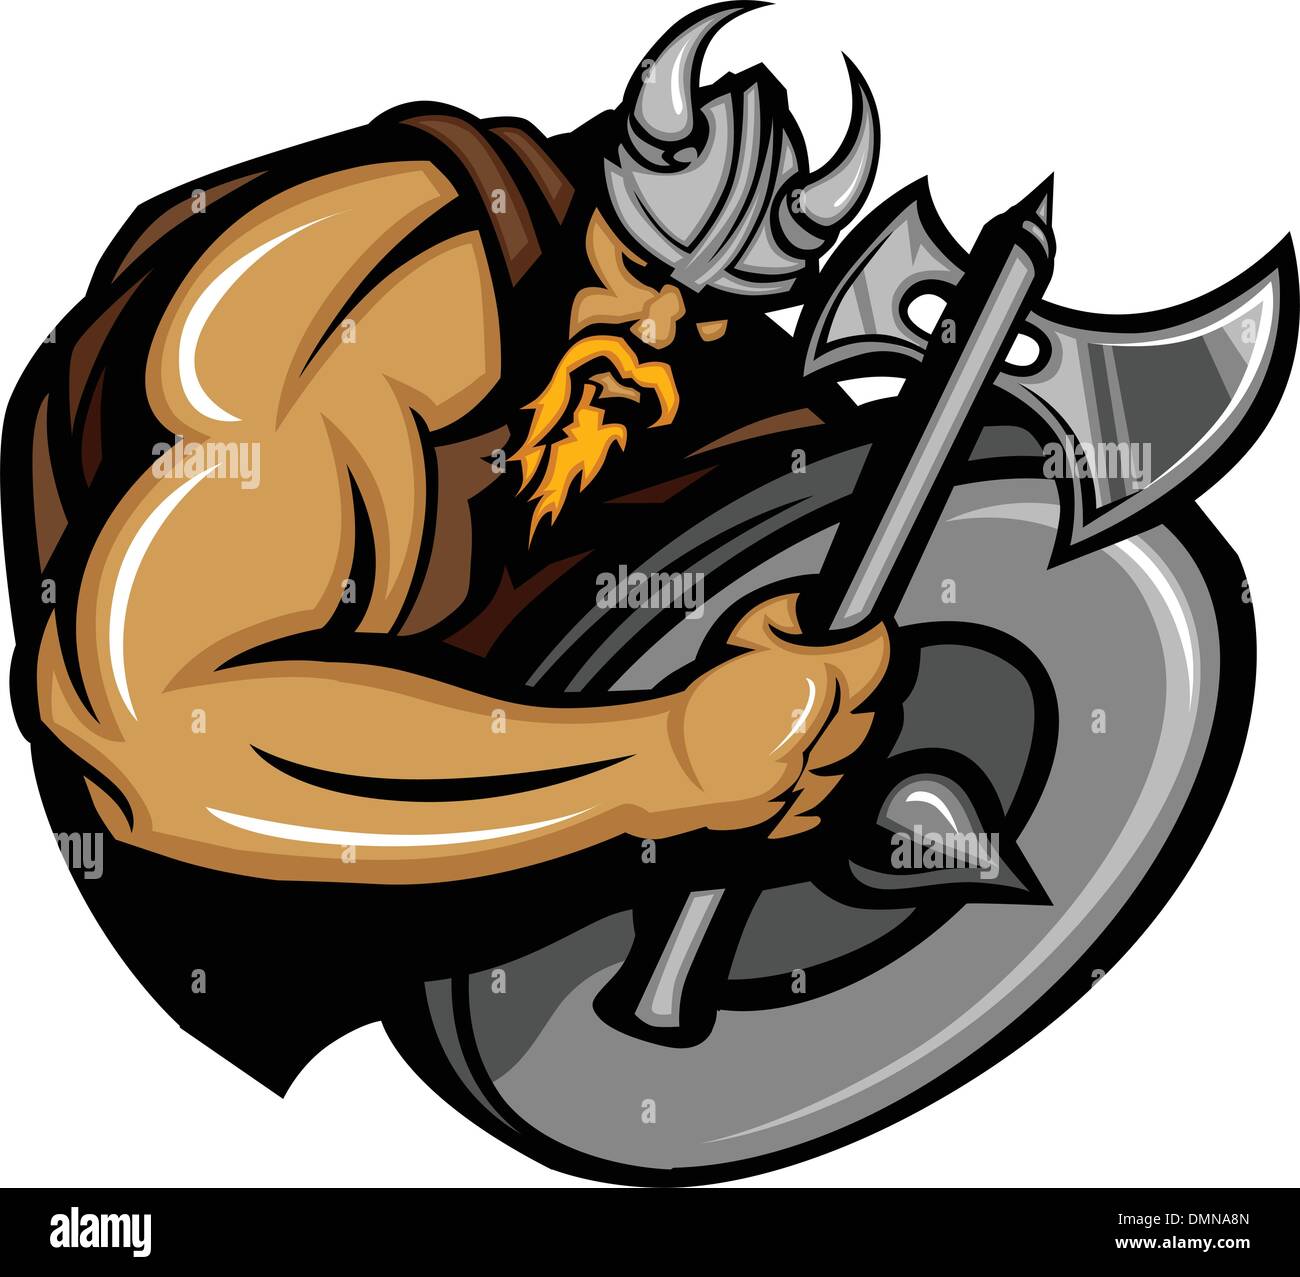 Viking Norseman Mascot Cartoon with Ax and Shield Stock Vector